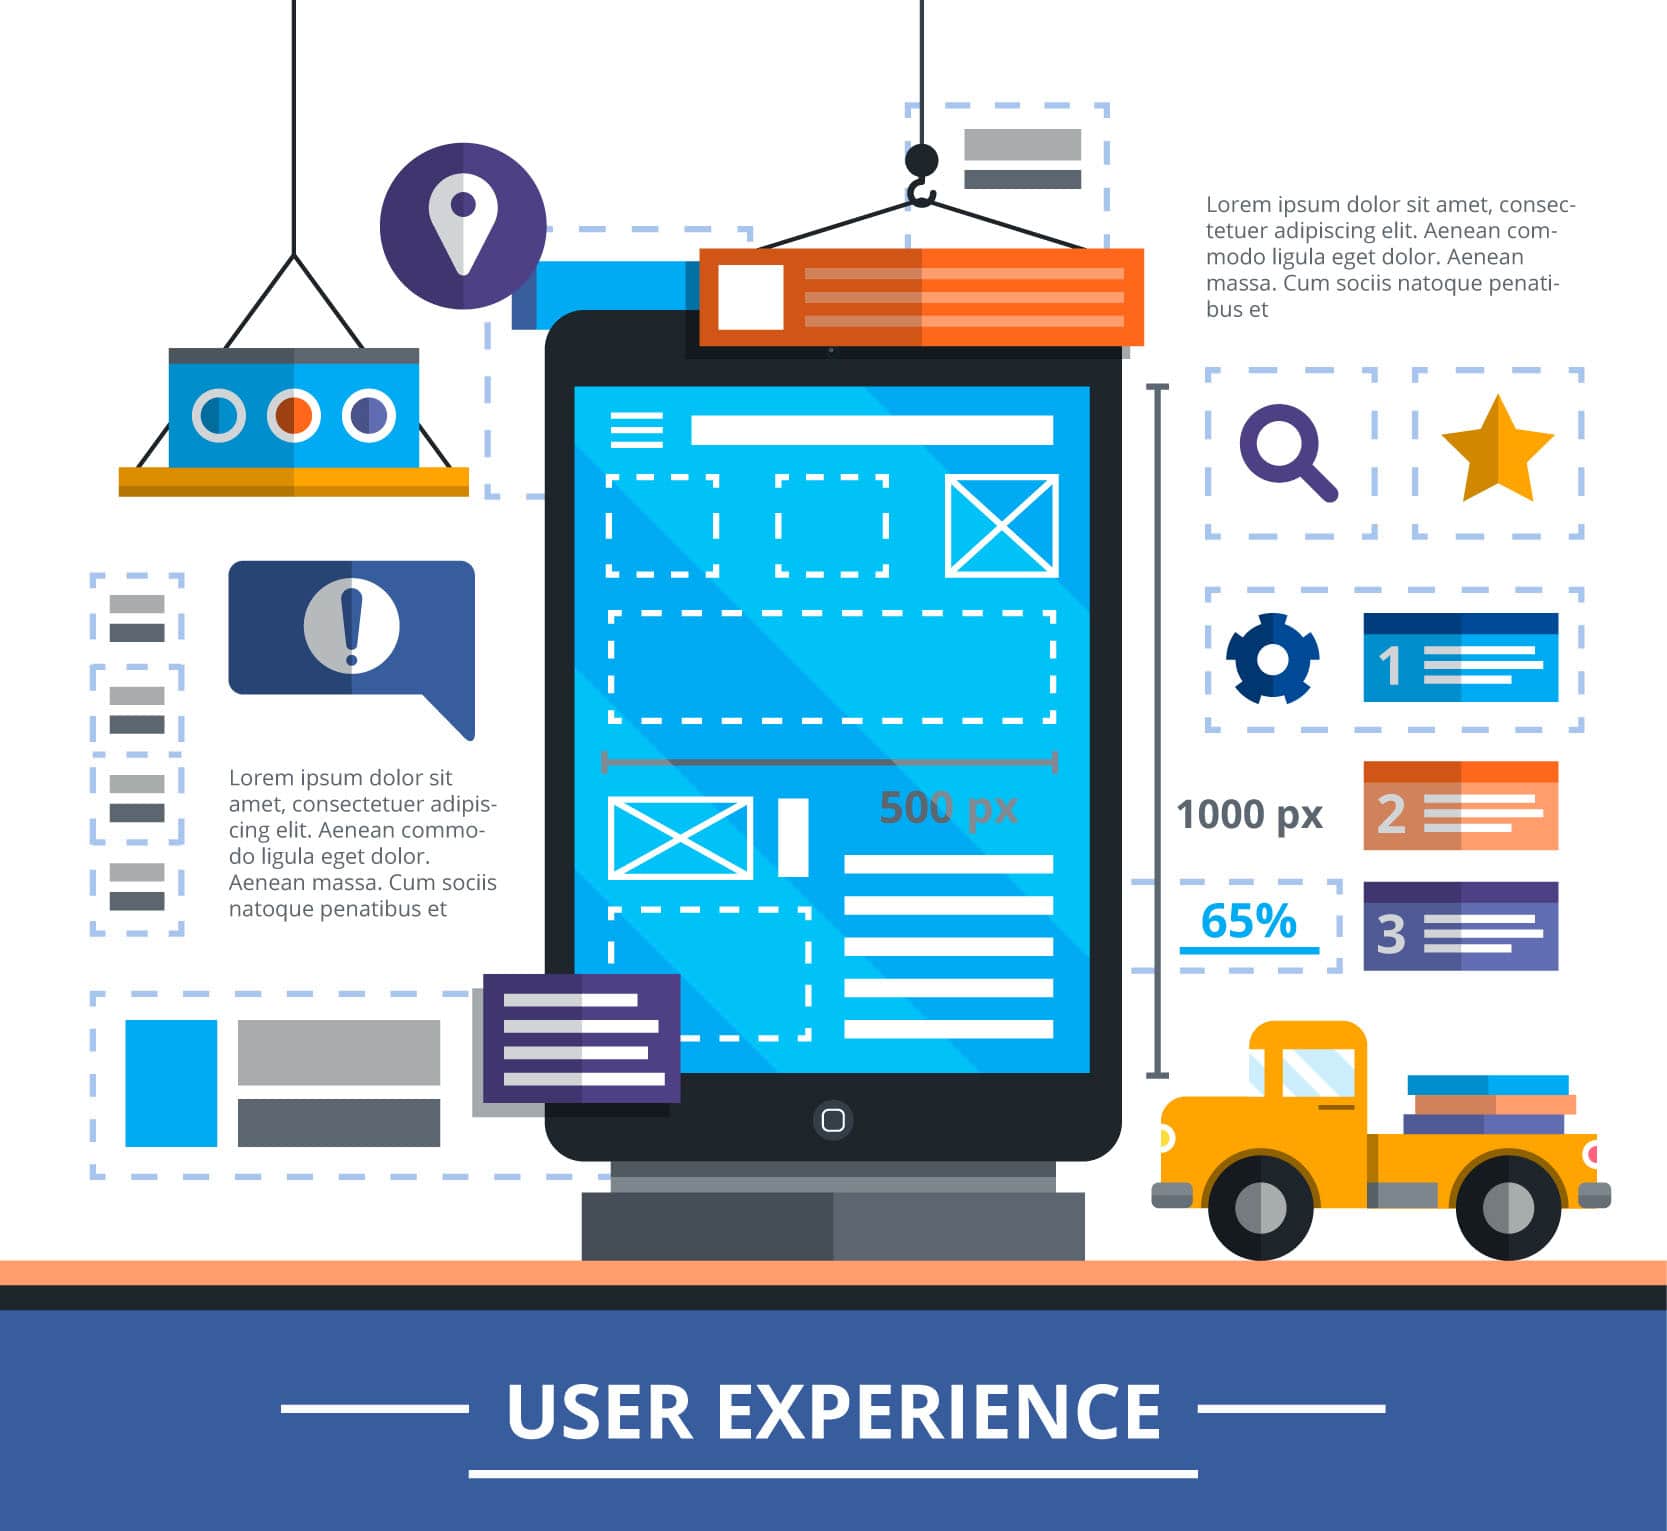 User Experience Design به ان بخش از طراحی سایت که مربوط به ایجاد یک ذهنیت مثبت نسبت به استفاده از سایت و خدمات سایت میشود میپردازد.